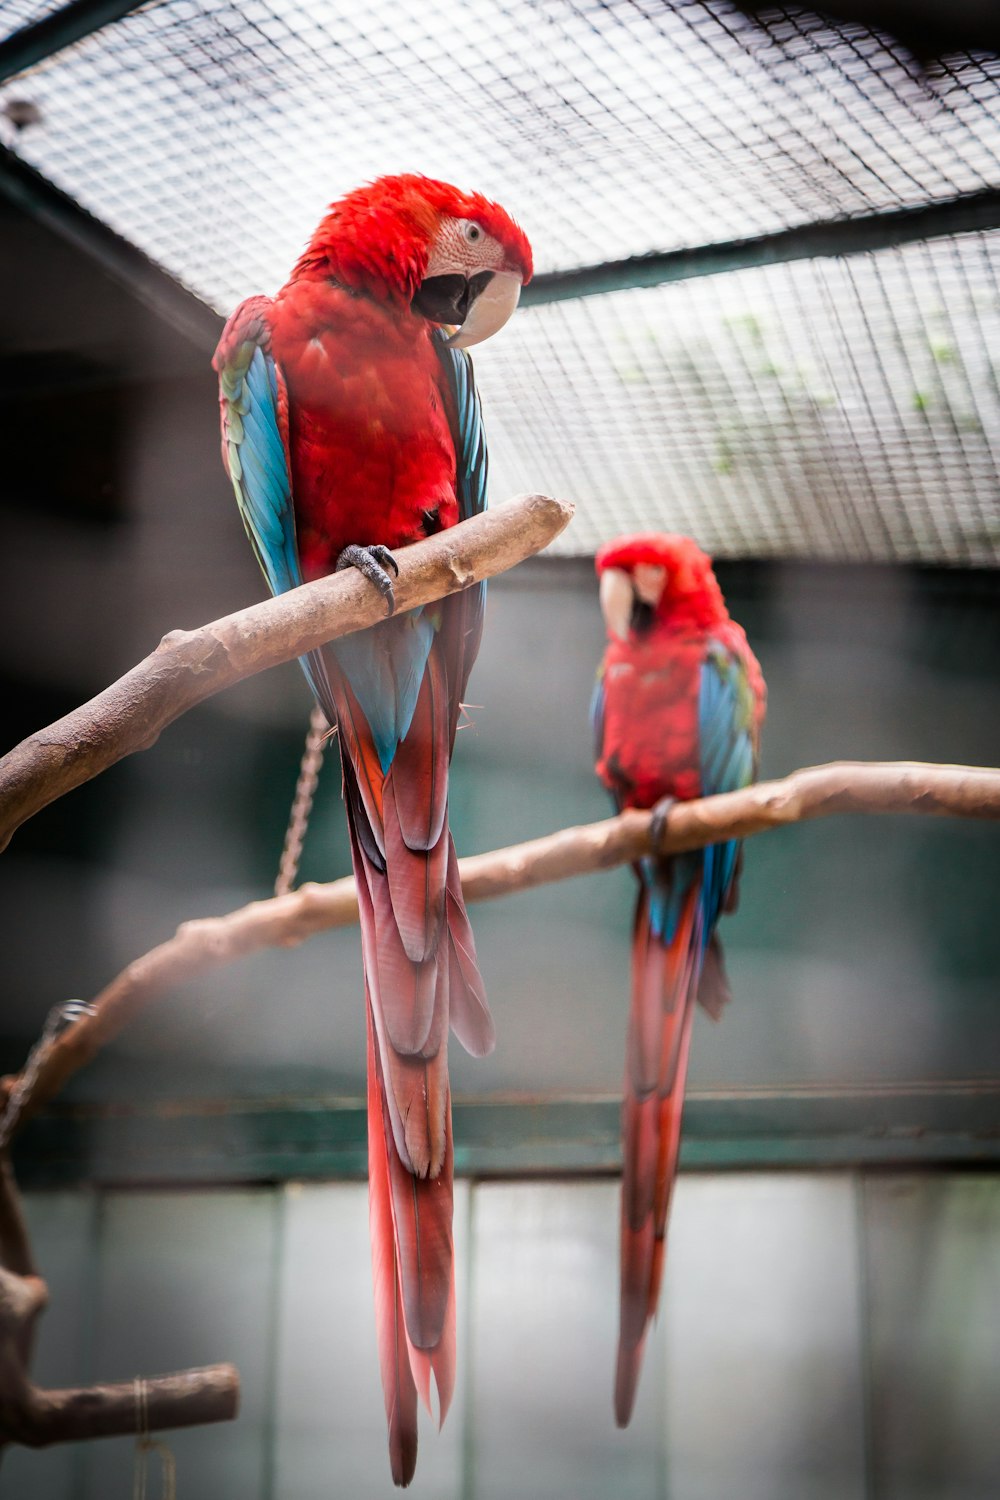 Fotografía de dos guacamayos rojos, azules y verdes